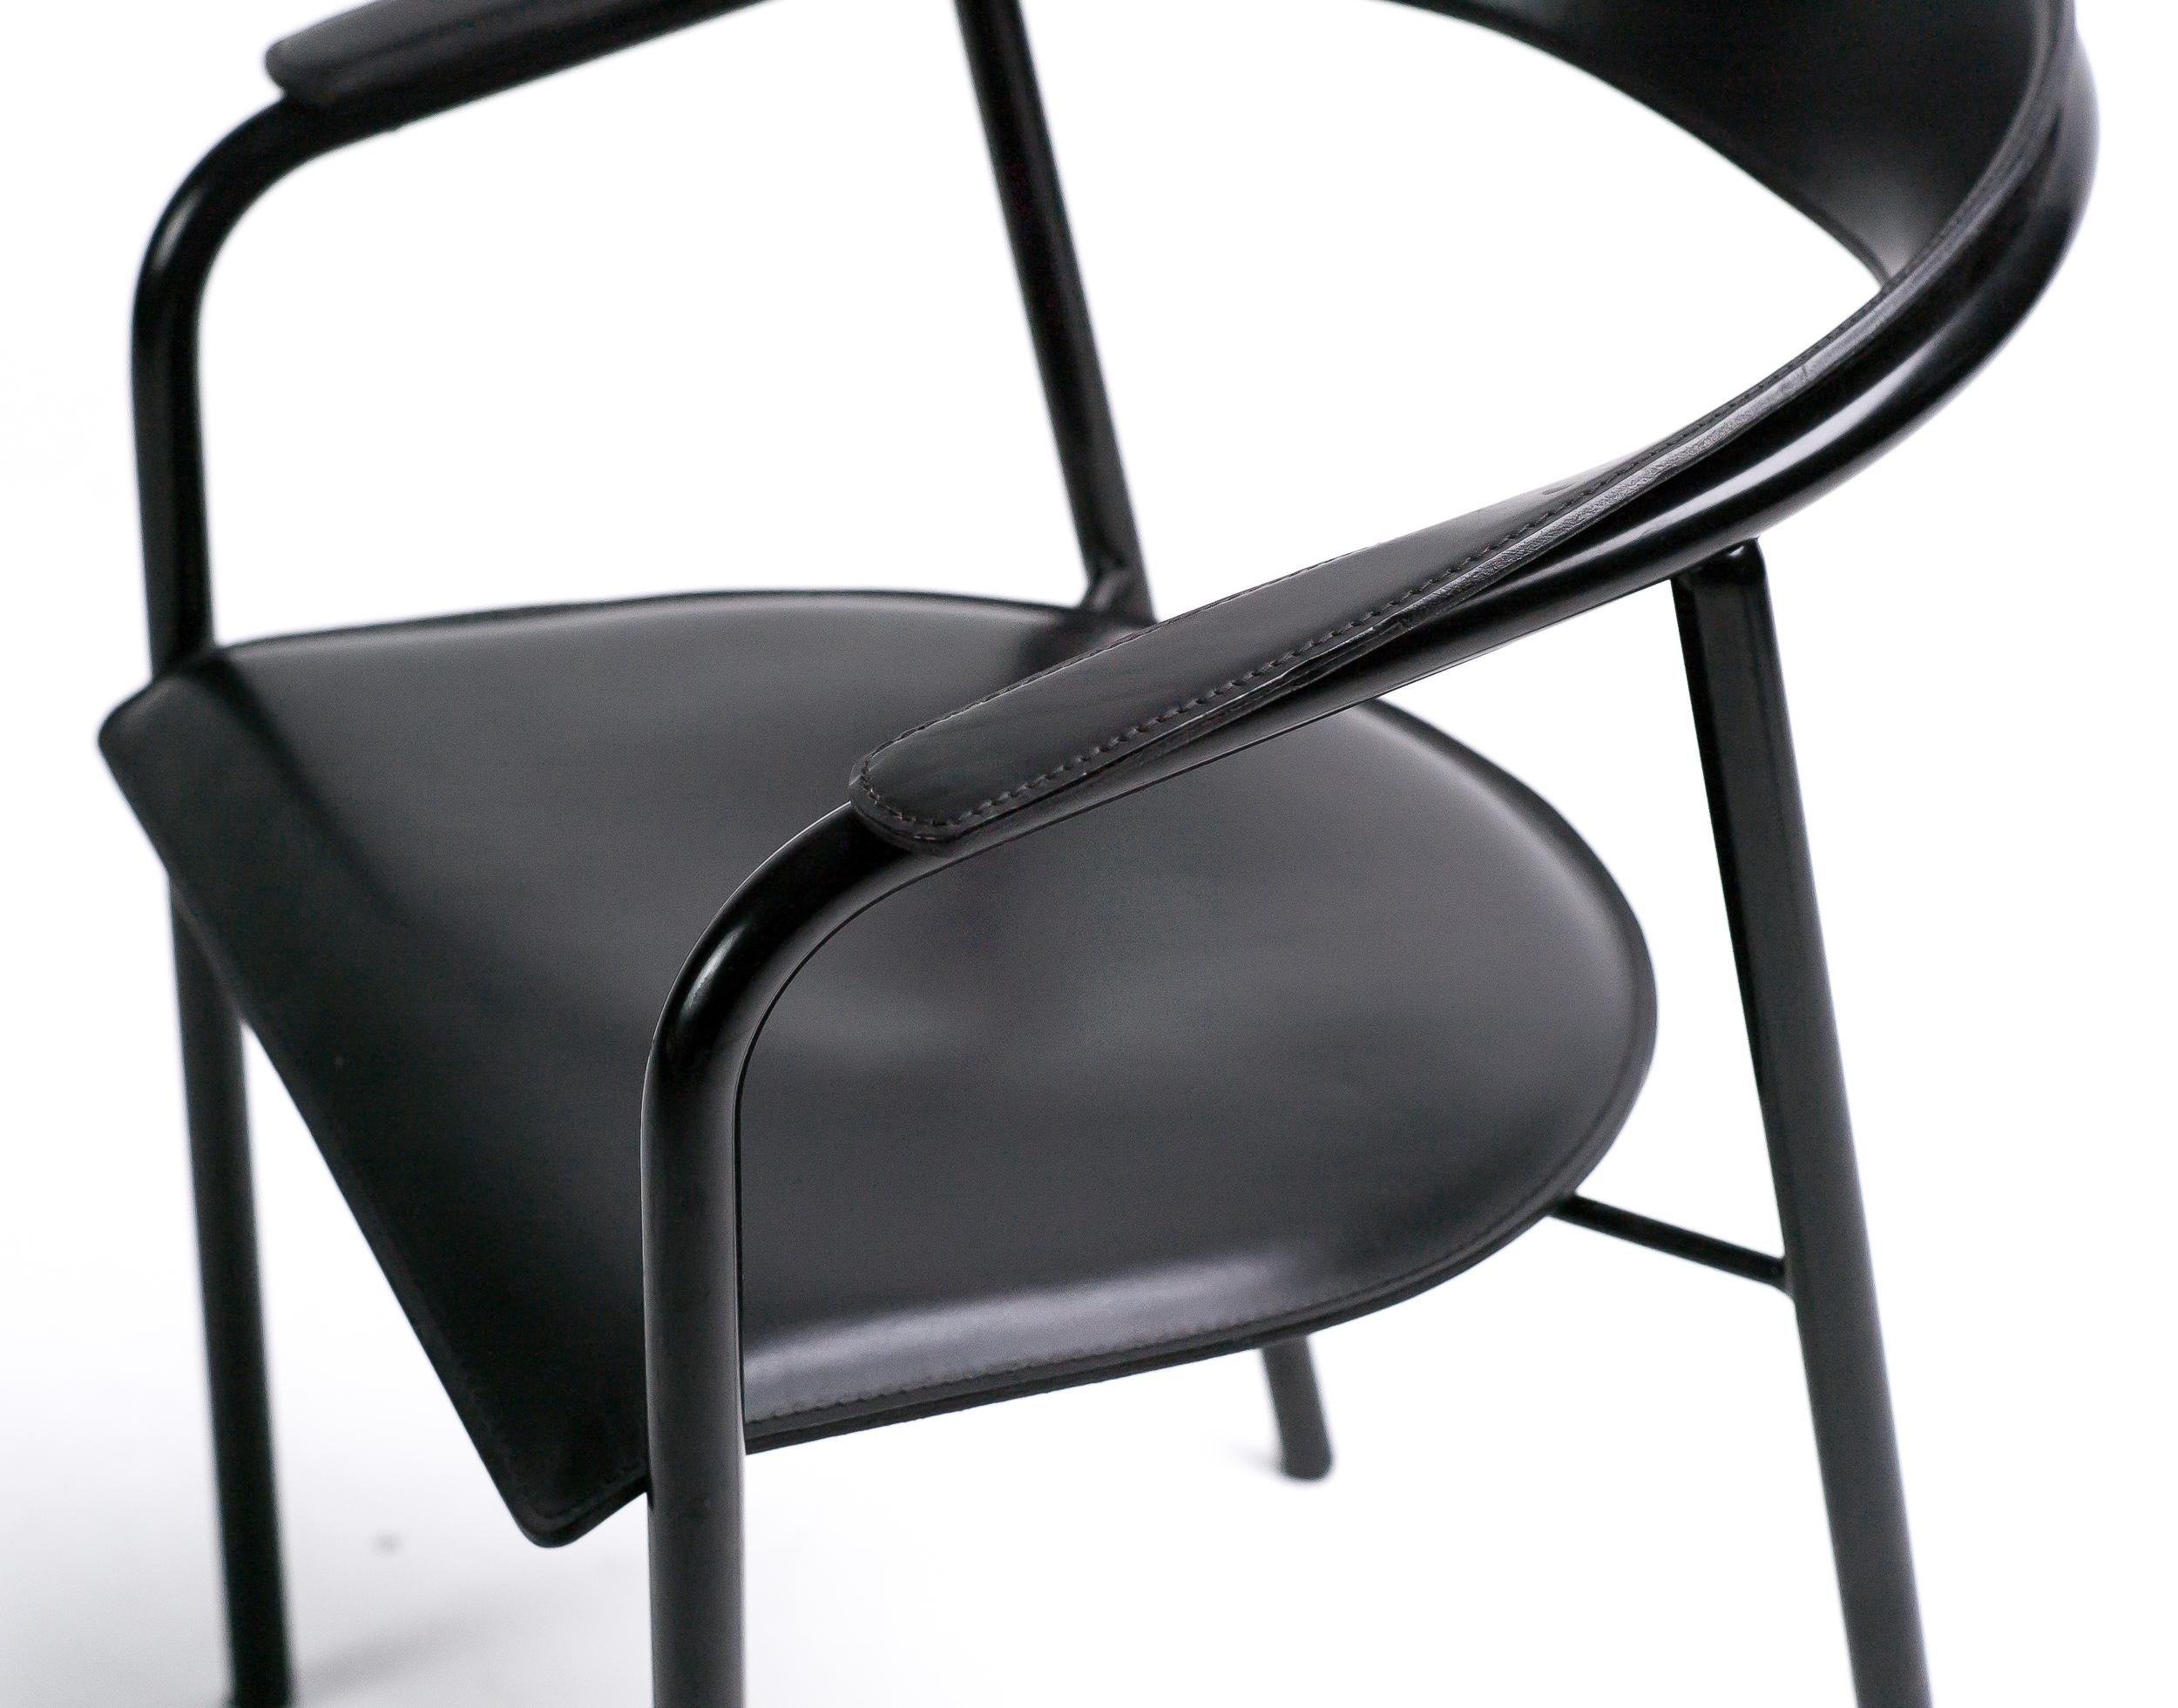 Ces fauteuils à dossier incliné ont été fabriqués par Arrben, en Italie, dans les années 1980.
Les cadres tubulaires sont émaillés en noir, le siège en cuir noir et le dossier incurvé sont ornés de coutures décoratives. Les chaises sont robustes